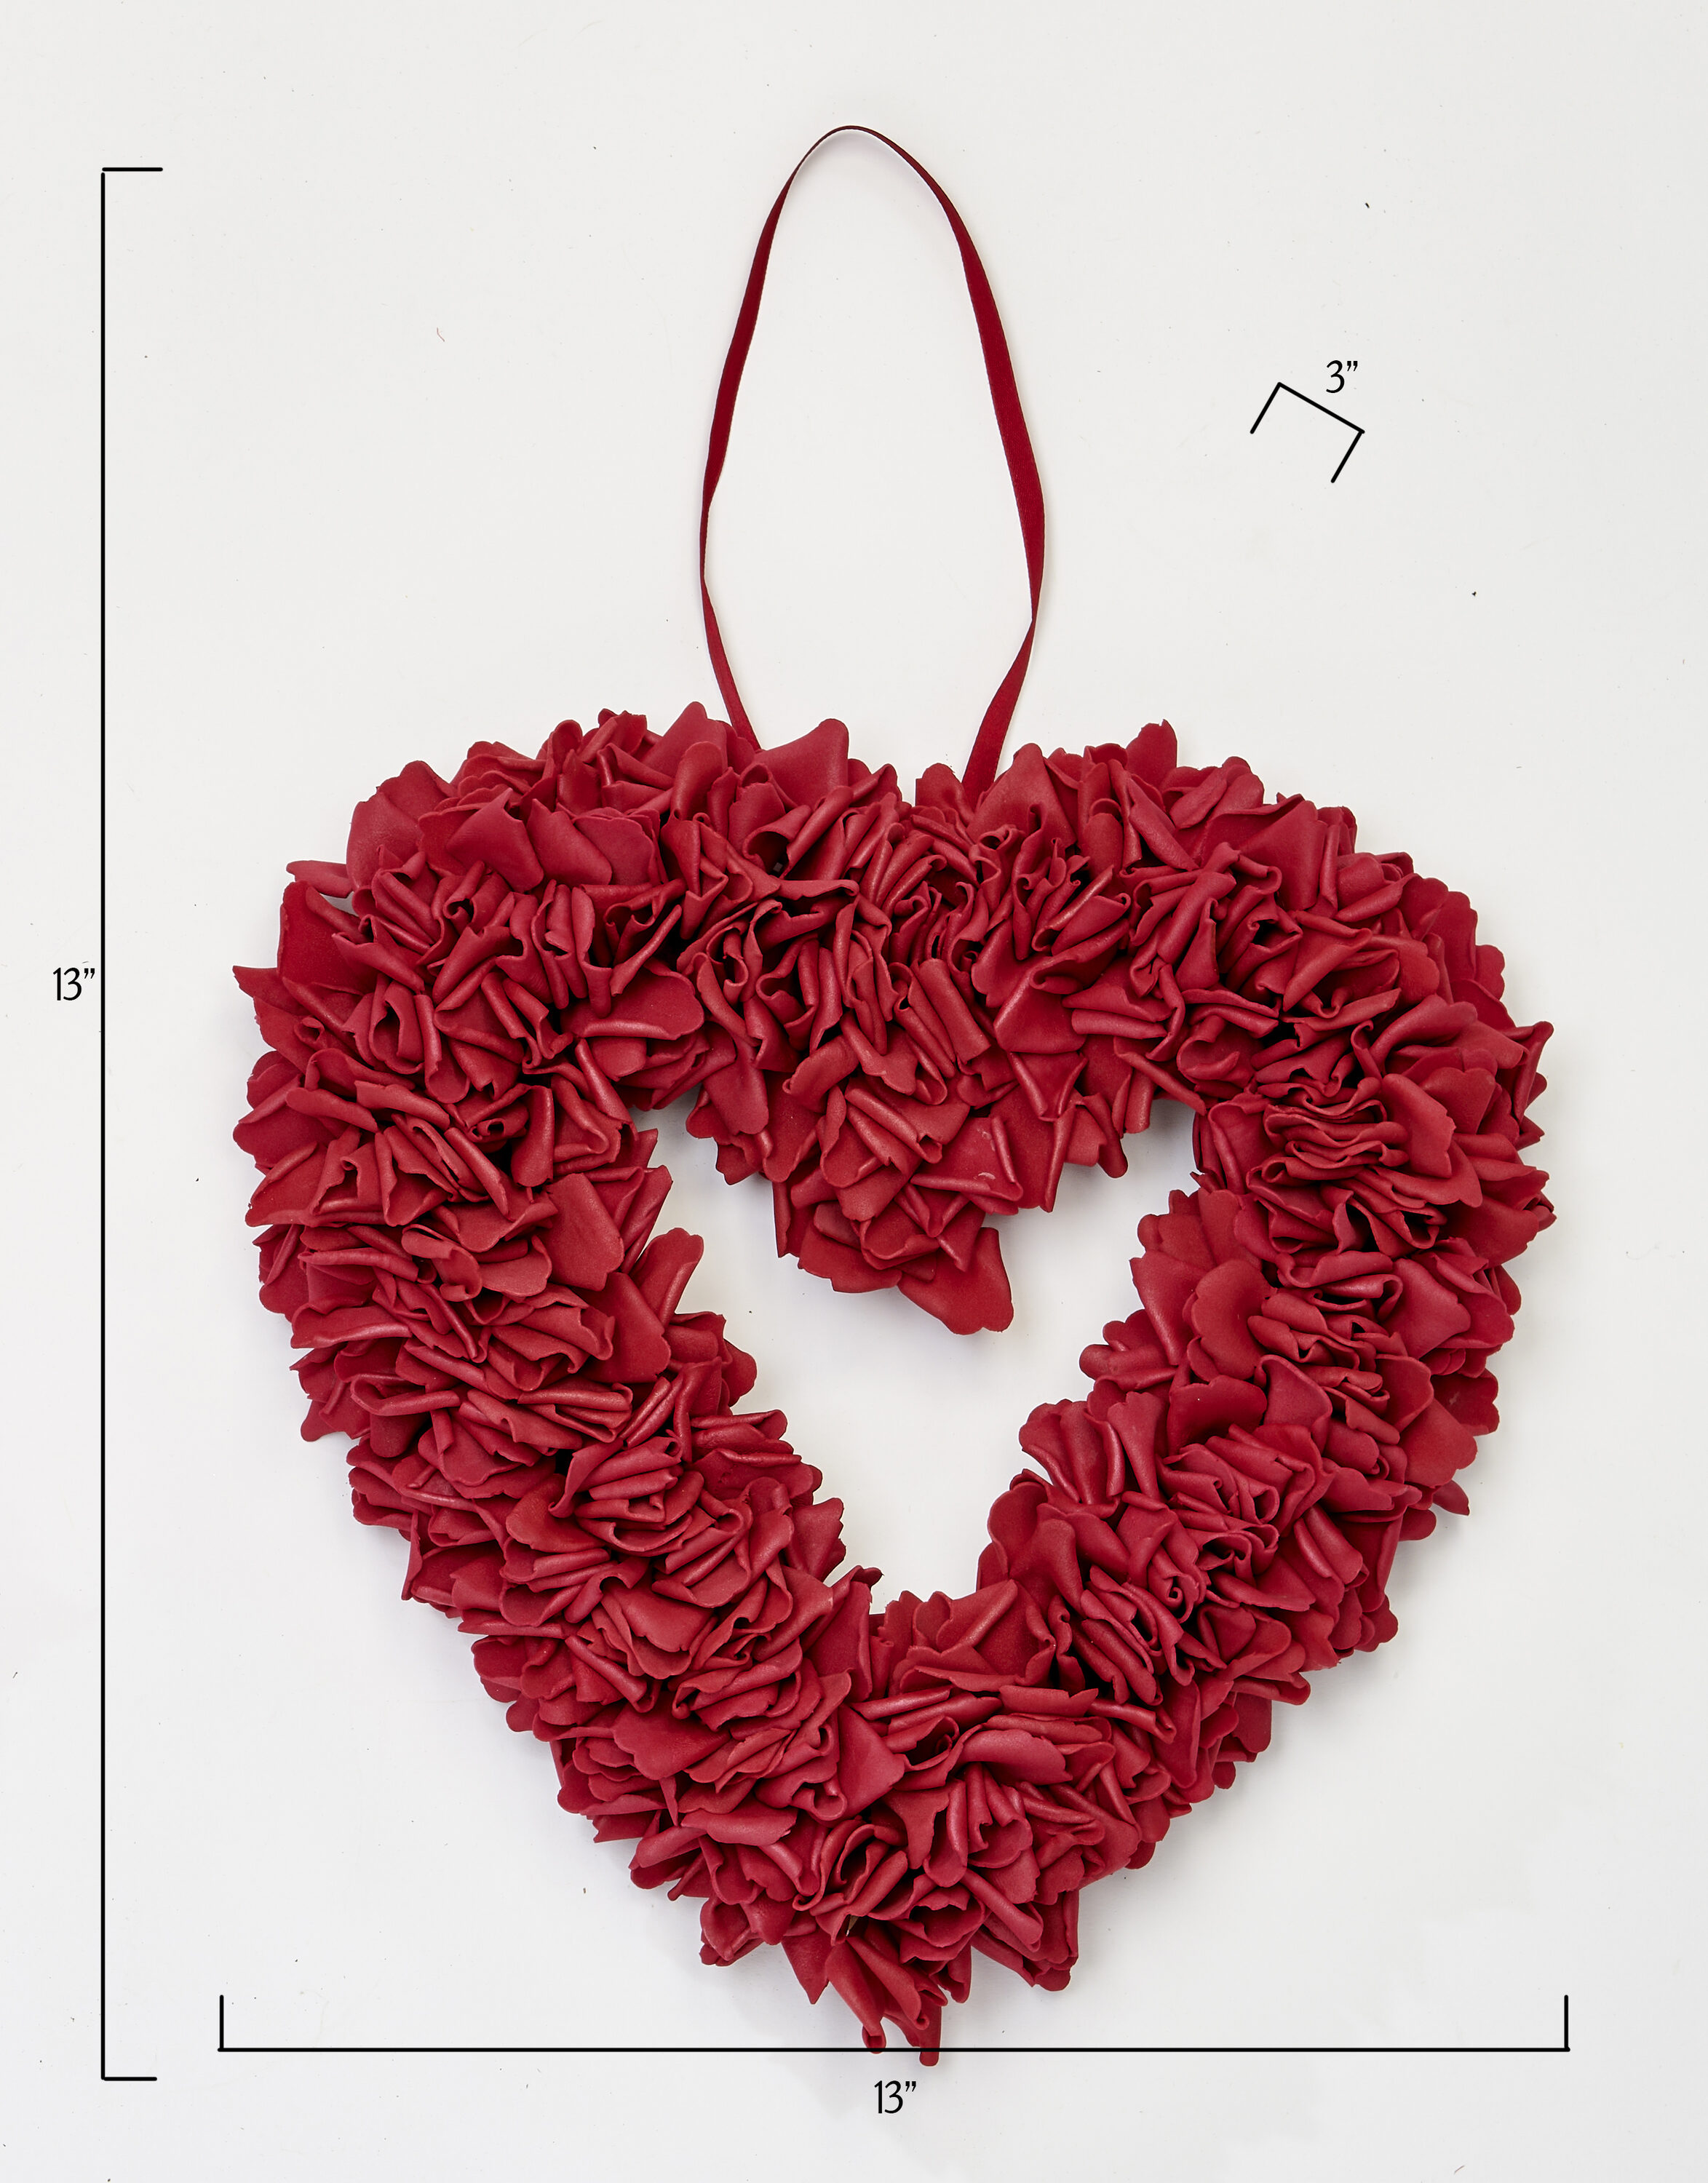 Baiyou crochet kit for beginners - 4pcs succulents, beginner